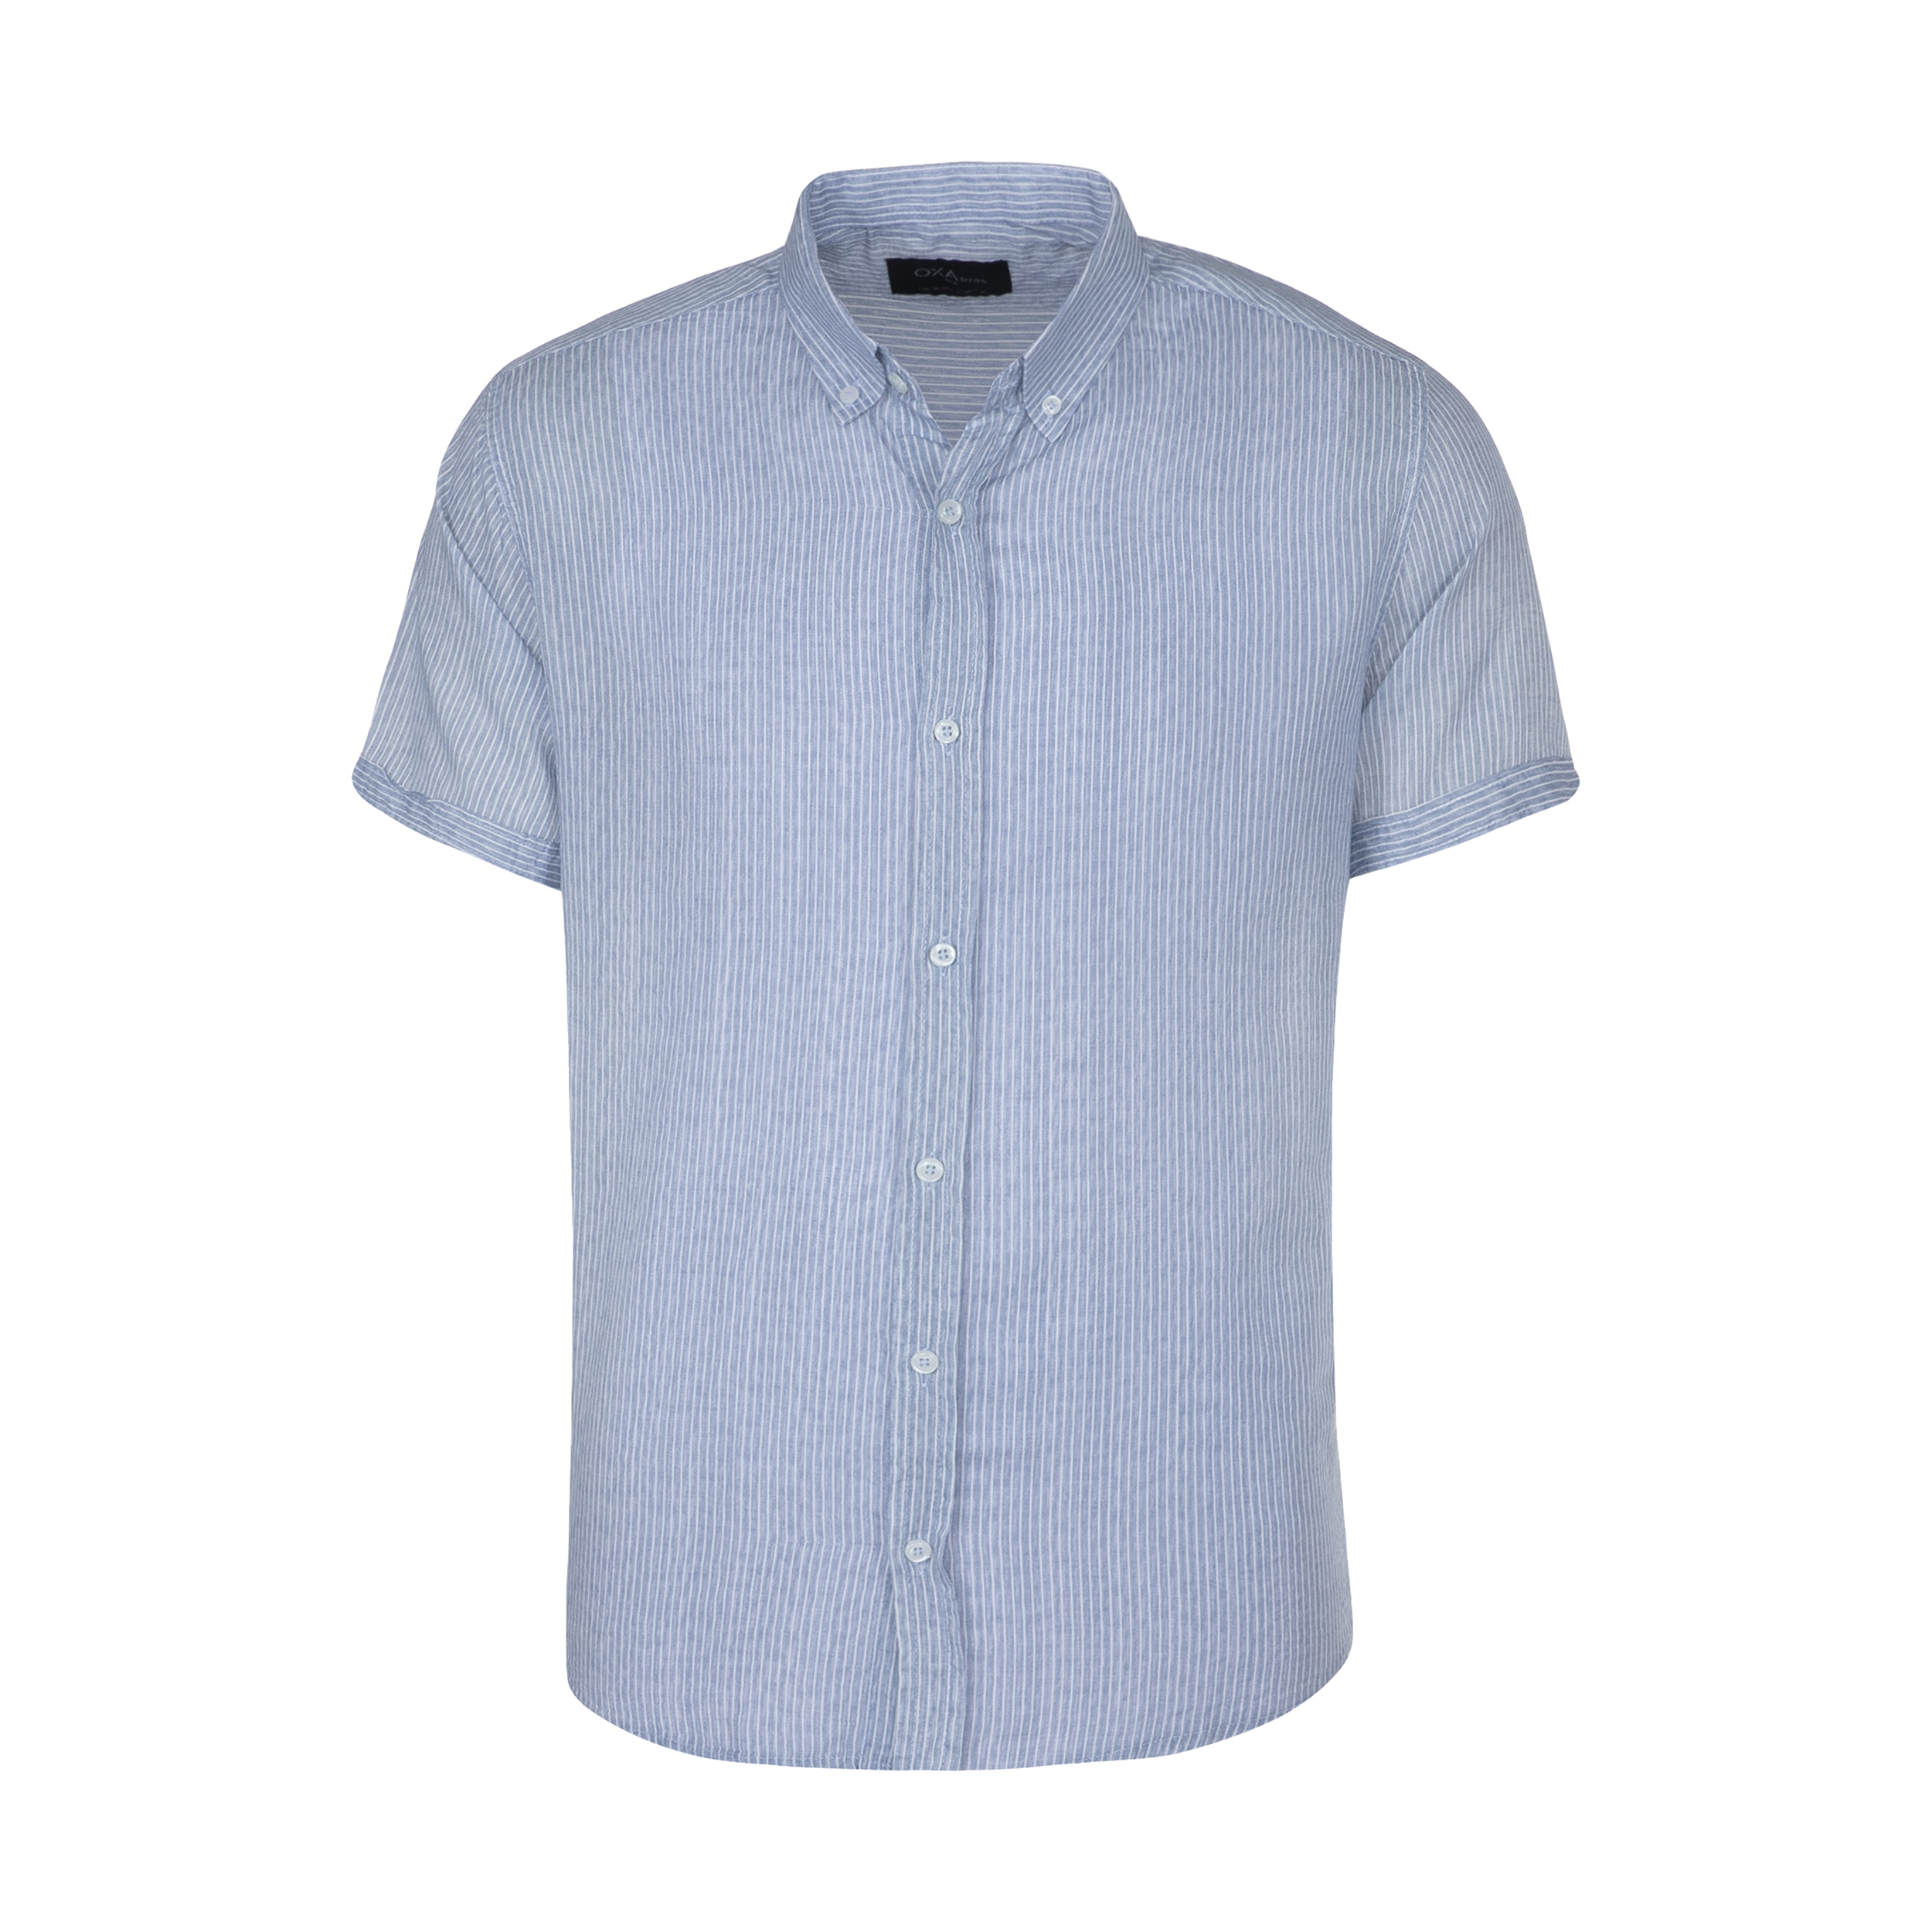 پیراهن مردانه اکزاترس مدل P012002150360005-150 -  - 1